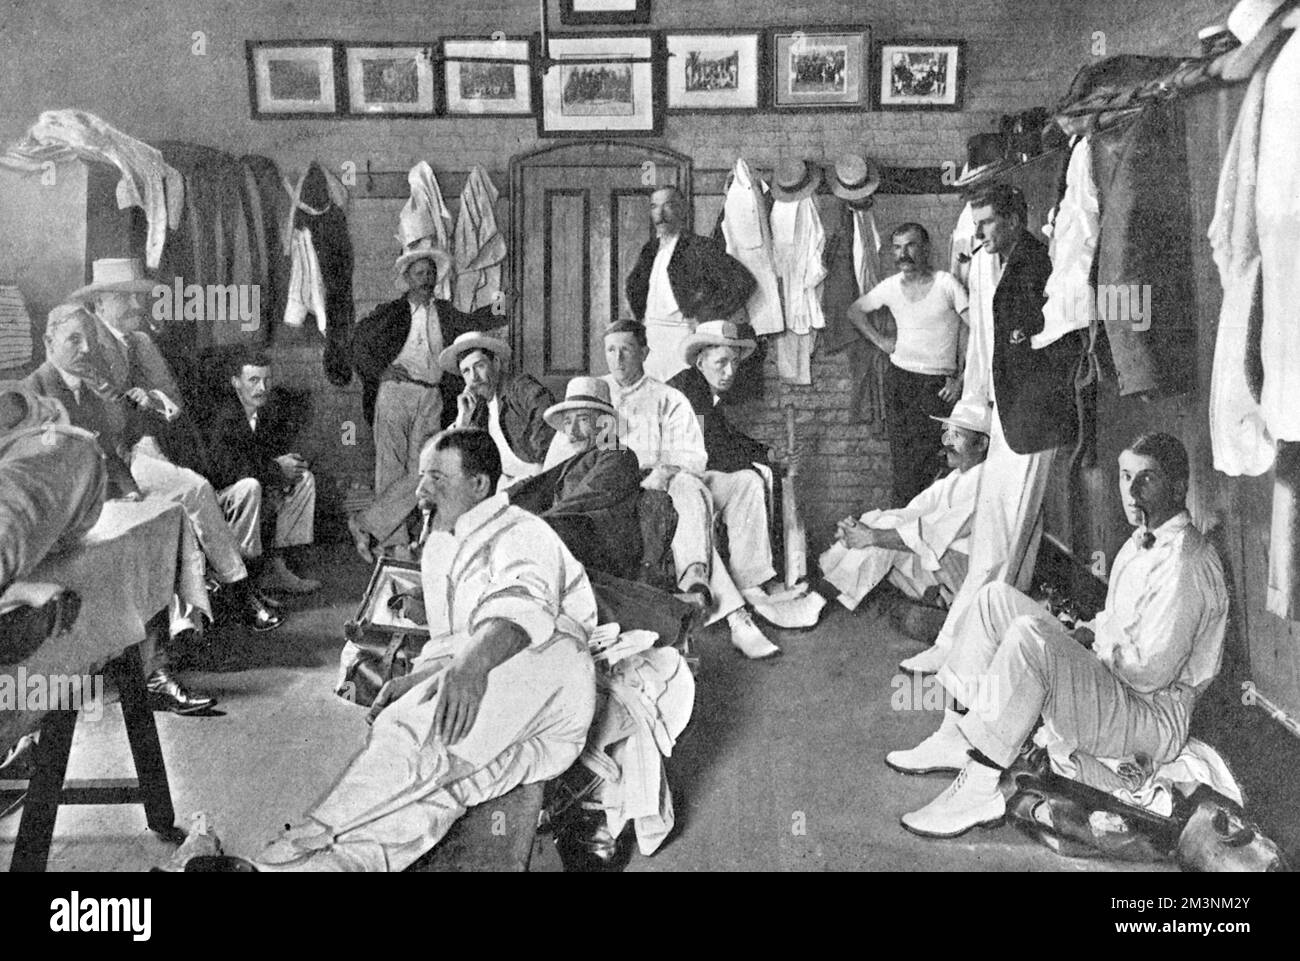 Gli australiani undici nel loro spogliatoio sul campo da cricket di Melbourne. Nell'angolo destro della foto è C. Hill fumando una pipa. Altri giocatori sono M. A. Noble, W.P. Howell, R.A. Duff, C. McLeod, S.Gregory, J.J. Kelly e W.W. Armstrong. Data: 1904 Foto Stock